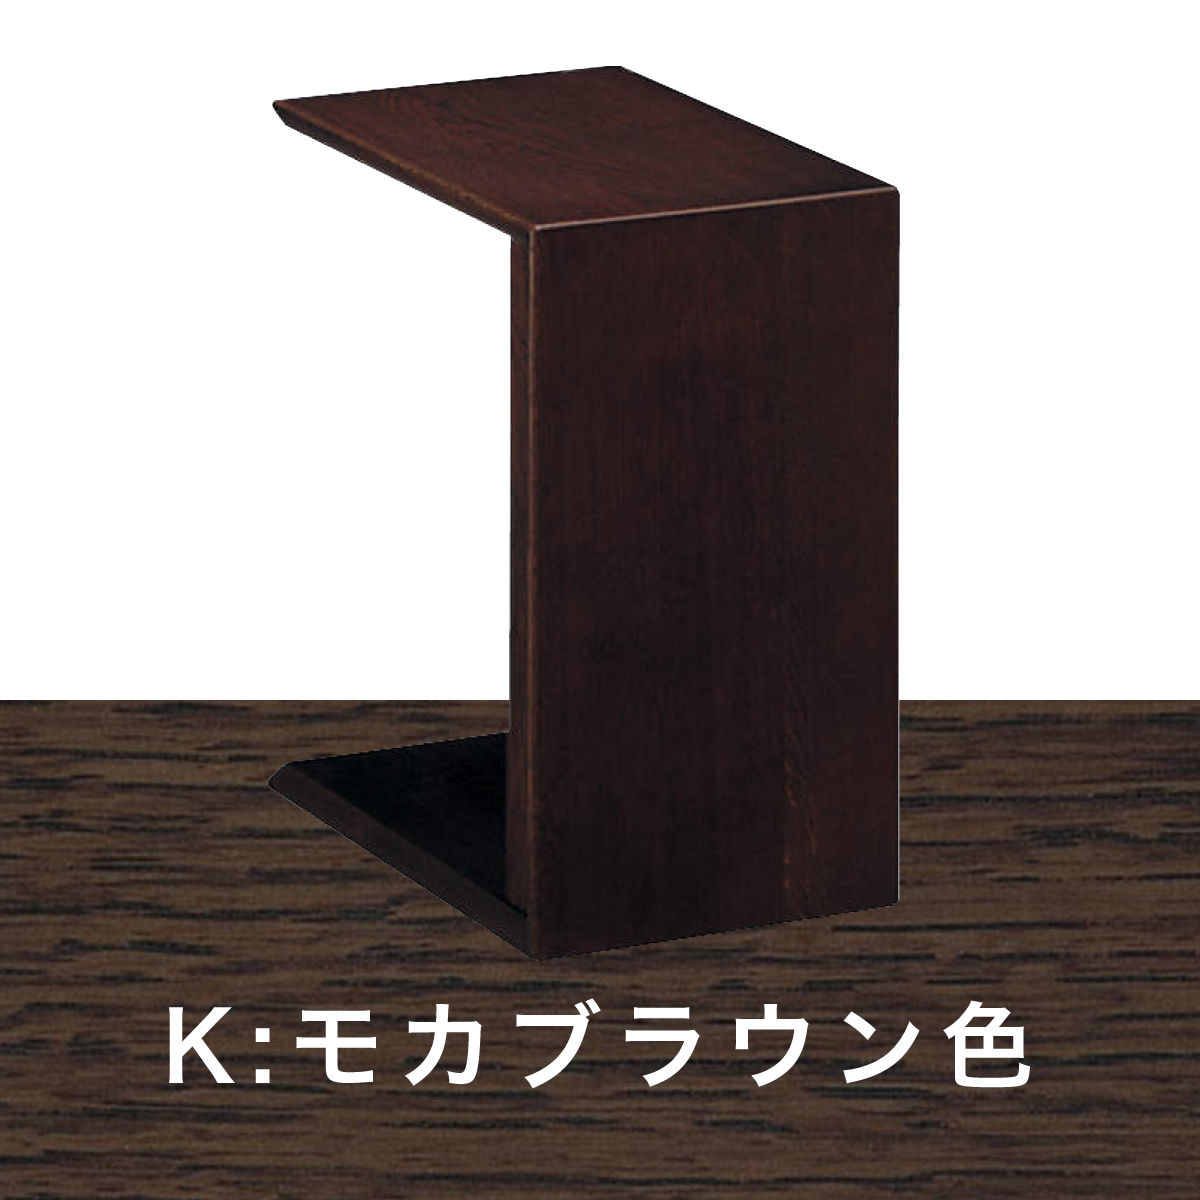 サイドテーブルカリモク コの字型 テーブル TU1752 オーク 材 木製 机 